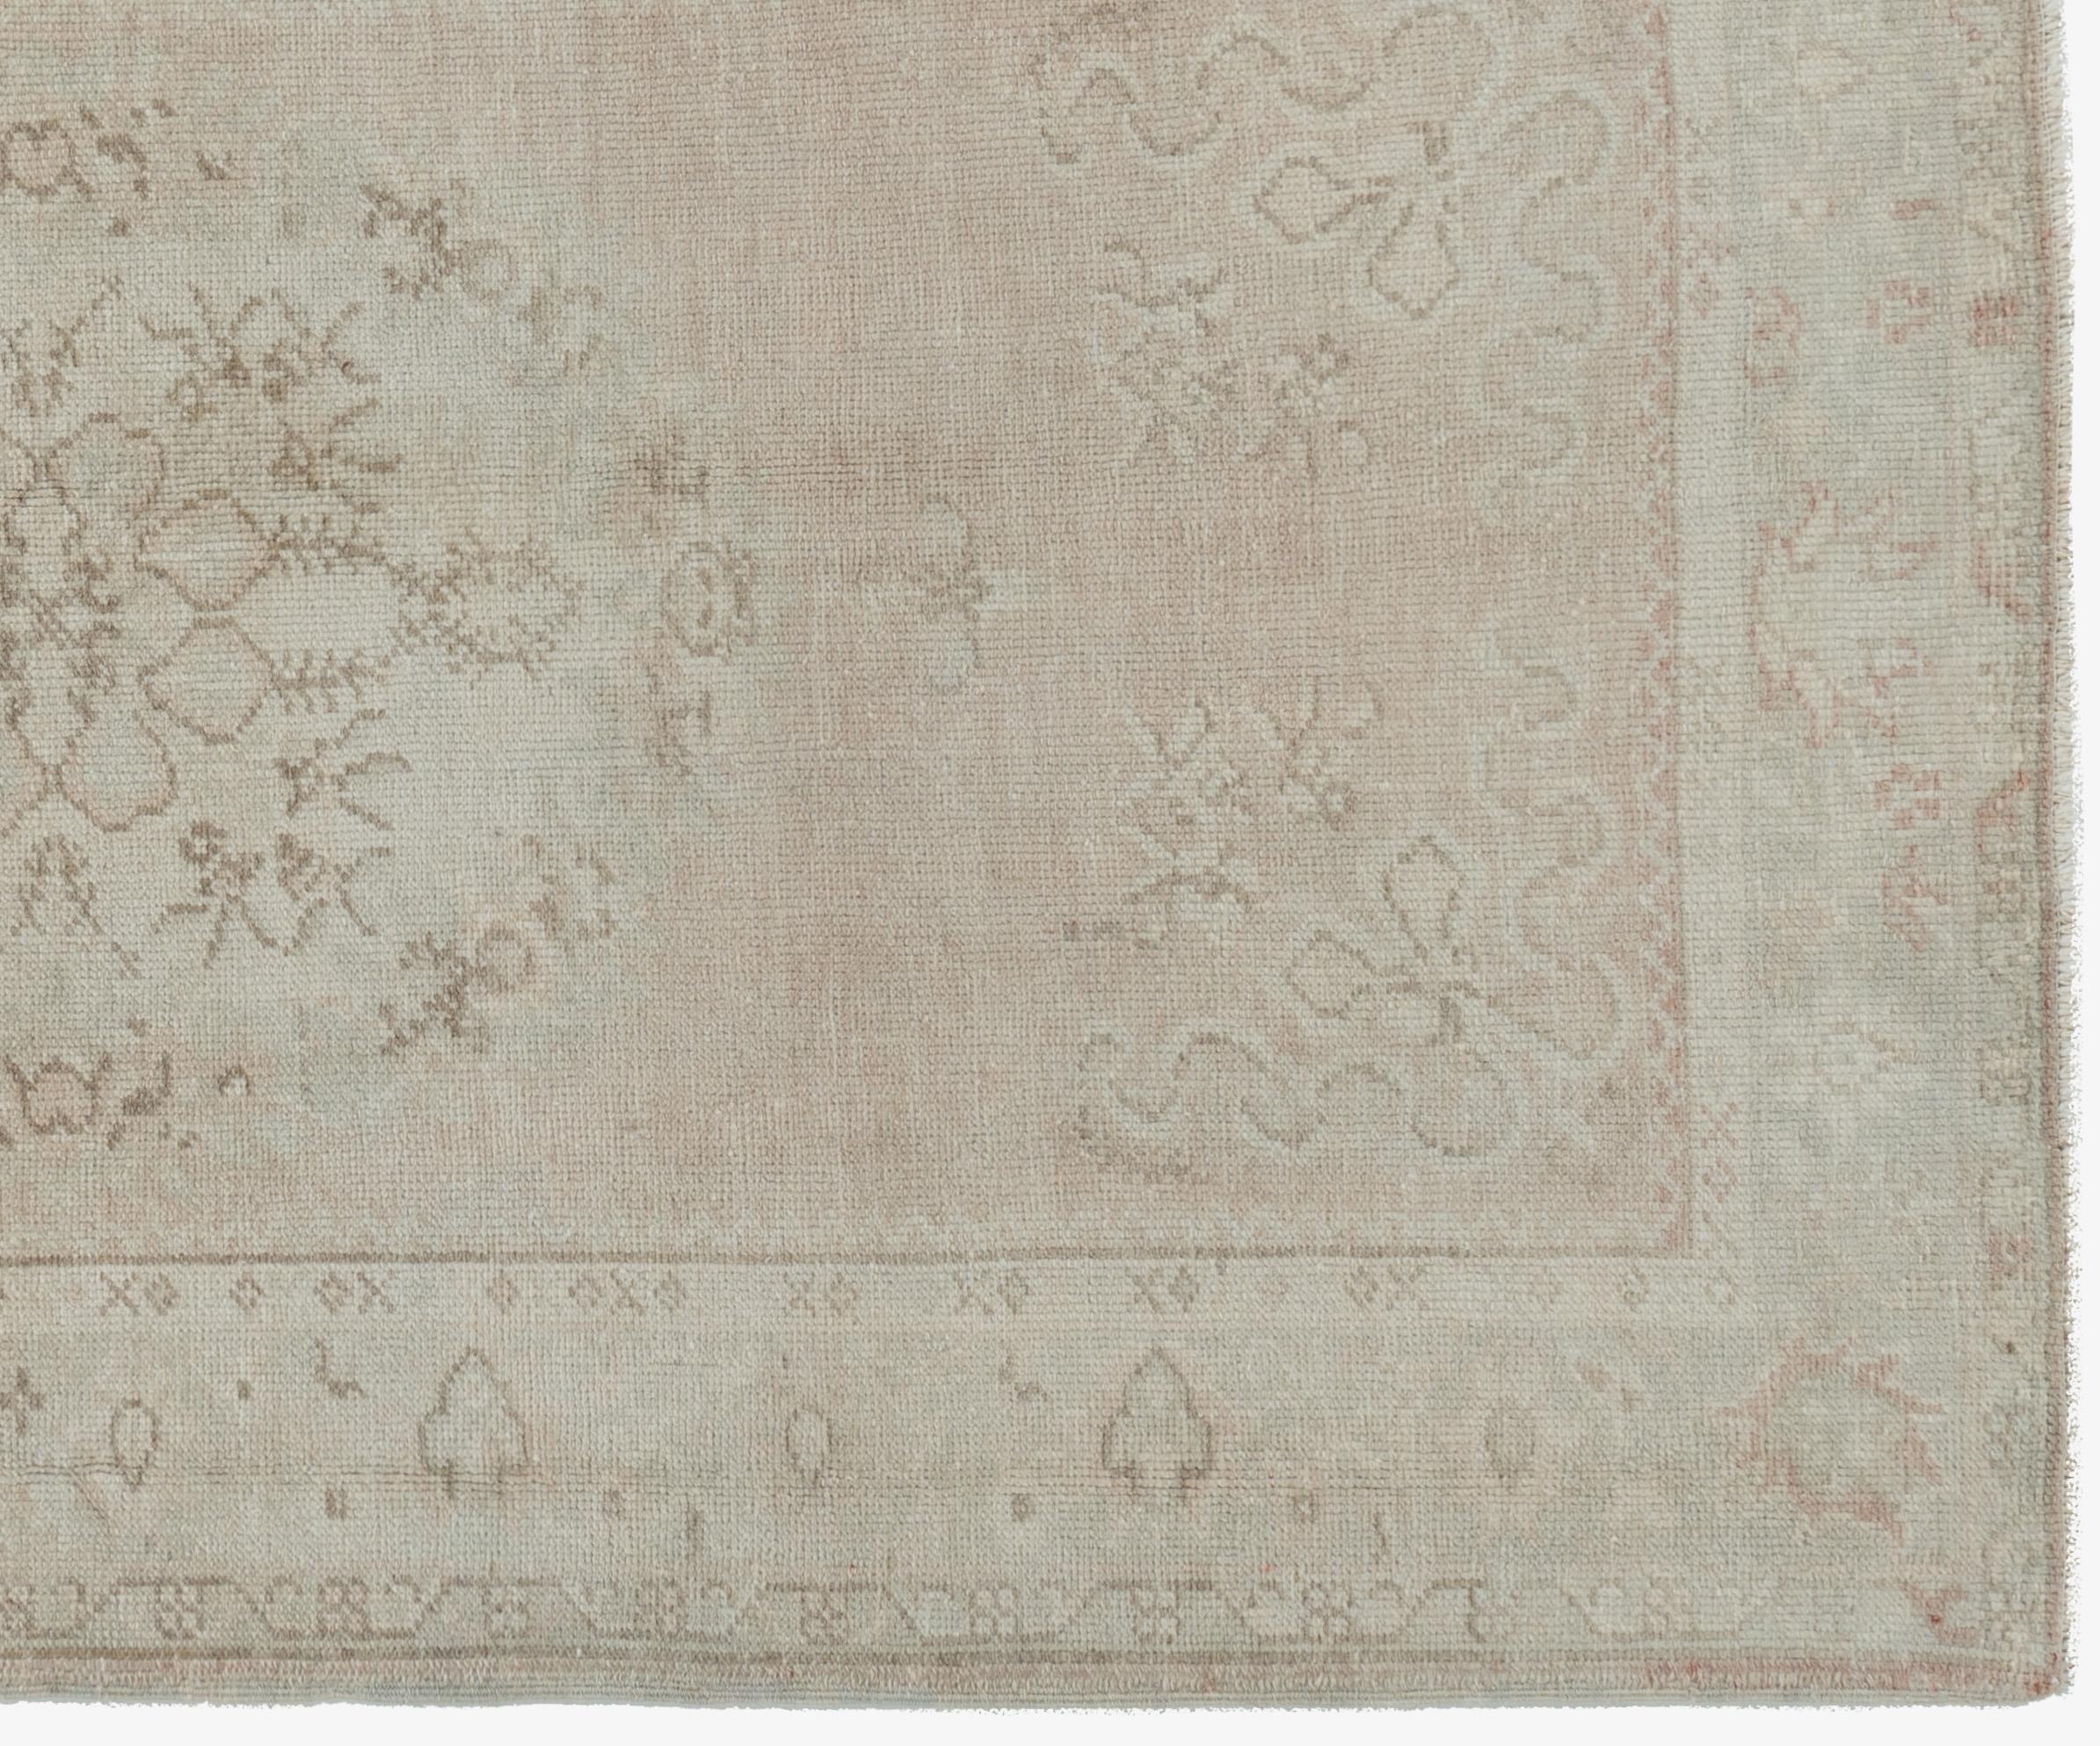 Tapis turc vintage Oushak 3'4 X 6'2. La qualité luxueuse de la laine (pour laquelle les Oushaks ont toujours été célèbres) a contribué à l'éclat des couleurs. Contrairement à la plupart des tapis turcs, les tapis Oushak ont été fortement influencés